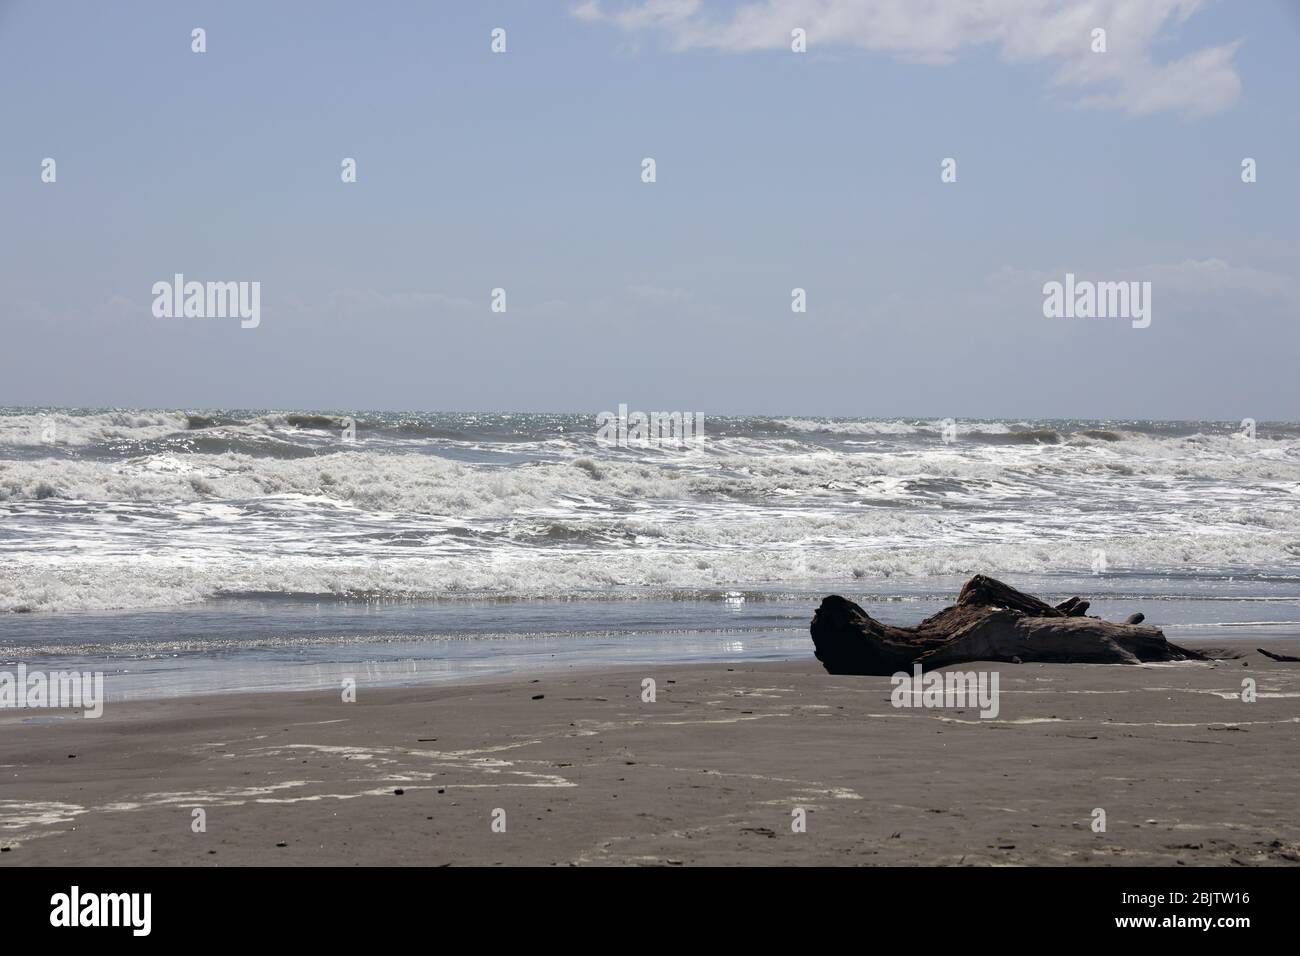 Treibholz.Twisted, knorled liegend Treibholz an einem schwarzen Sandstrand . Rollende Wellen. Küste von Neuseeland. Leer, ruhig, friedlich, keine Leute. Stockfoto